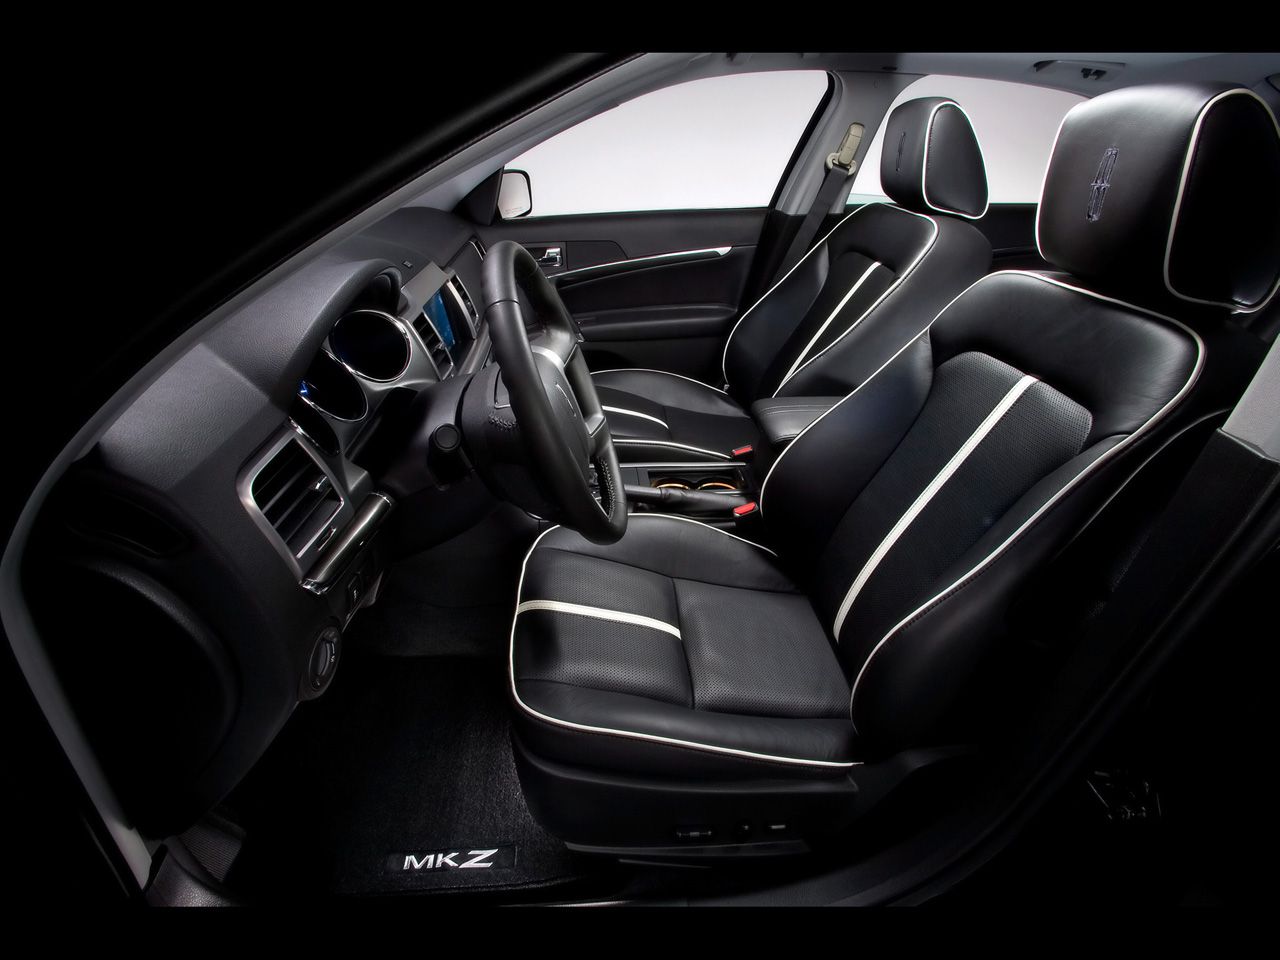 2010 Lincoln MKZ interior.